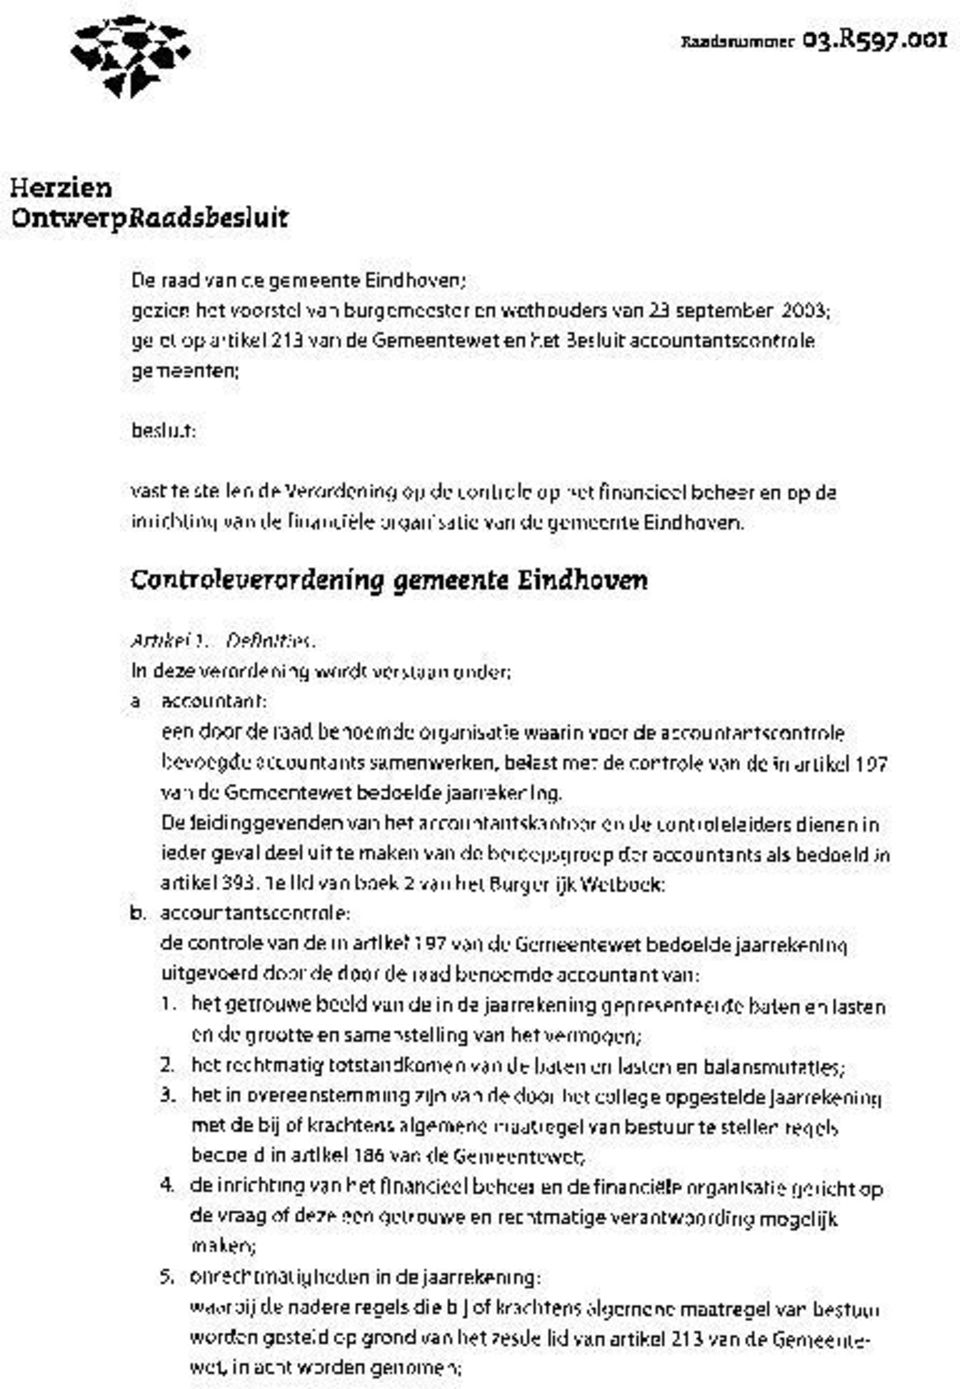 accountantscontrole gemeenten; besluit: vast te stellen de Verordening op de controle op het financieel beheer en op de inrichting van de financiele organisatie van de gemeente Eindhoven.